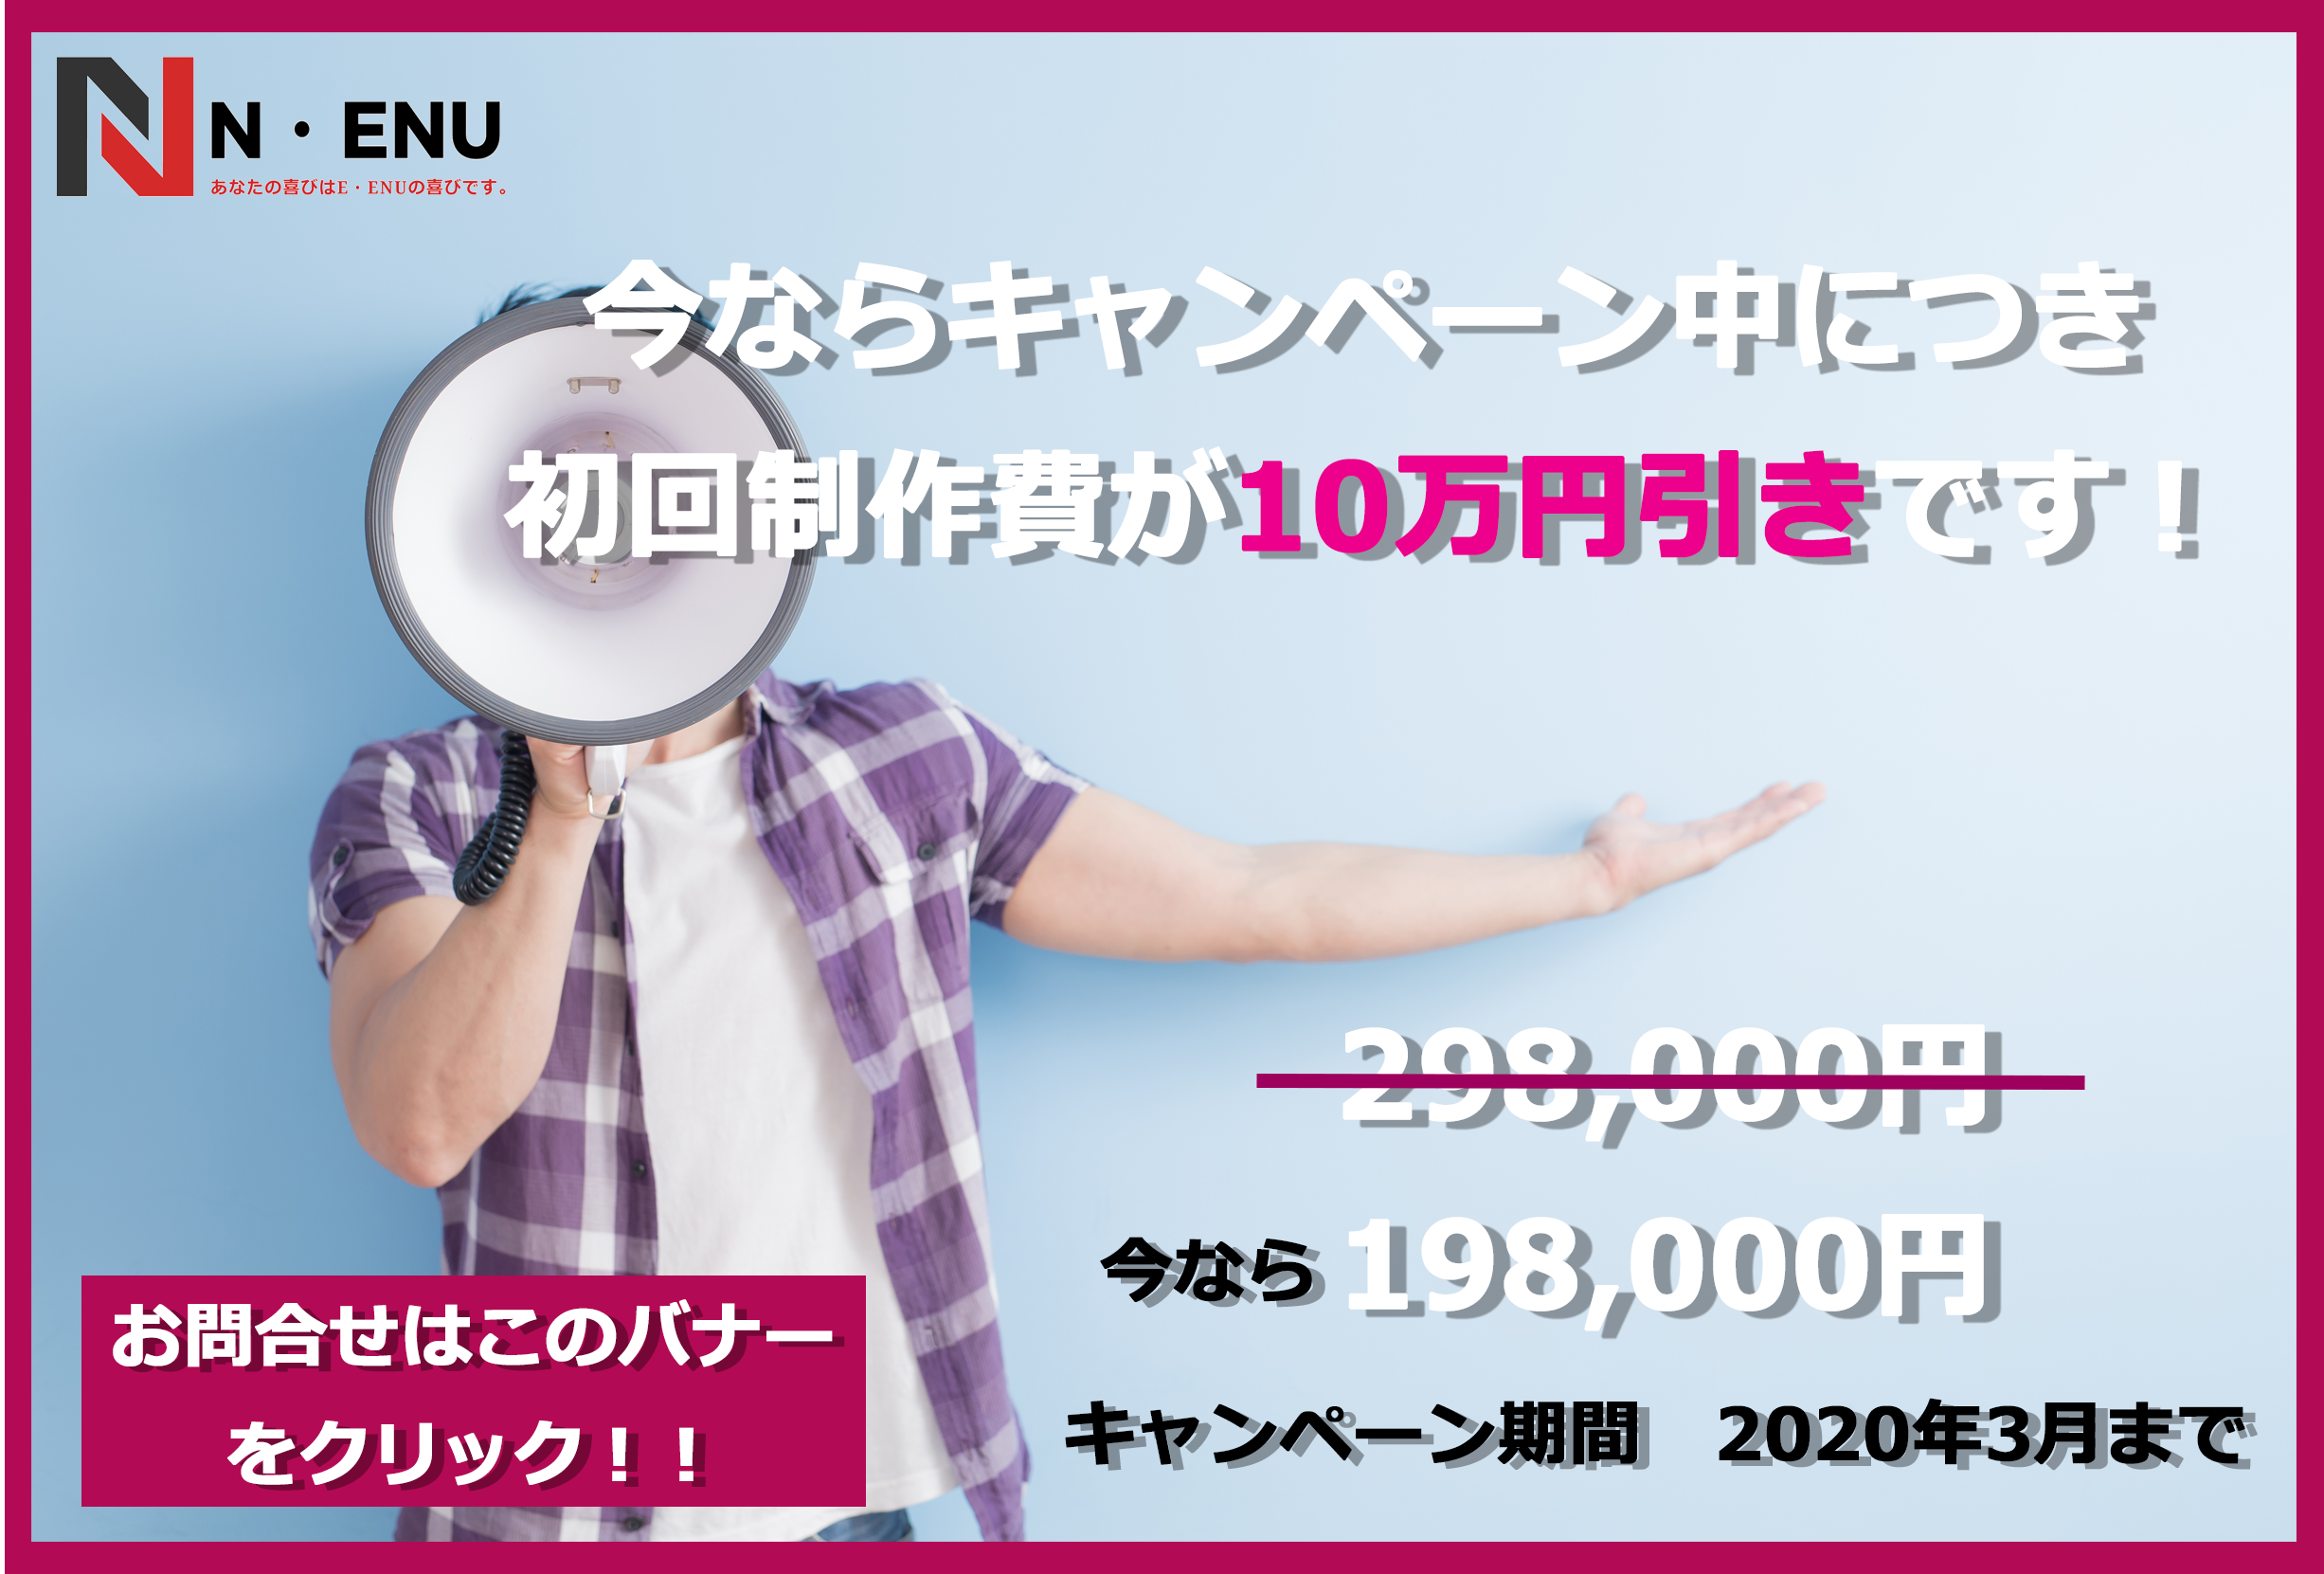 今ならキャンペーン中につき初回制作費が10万円引き！